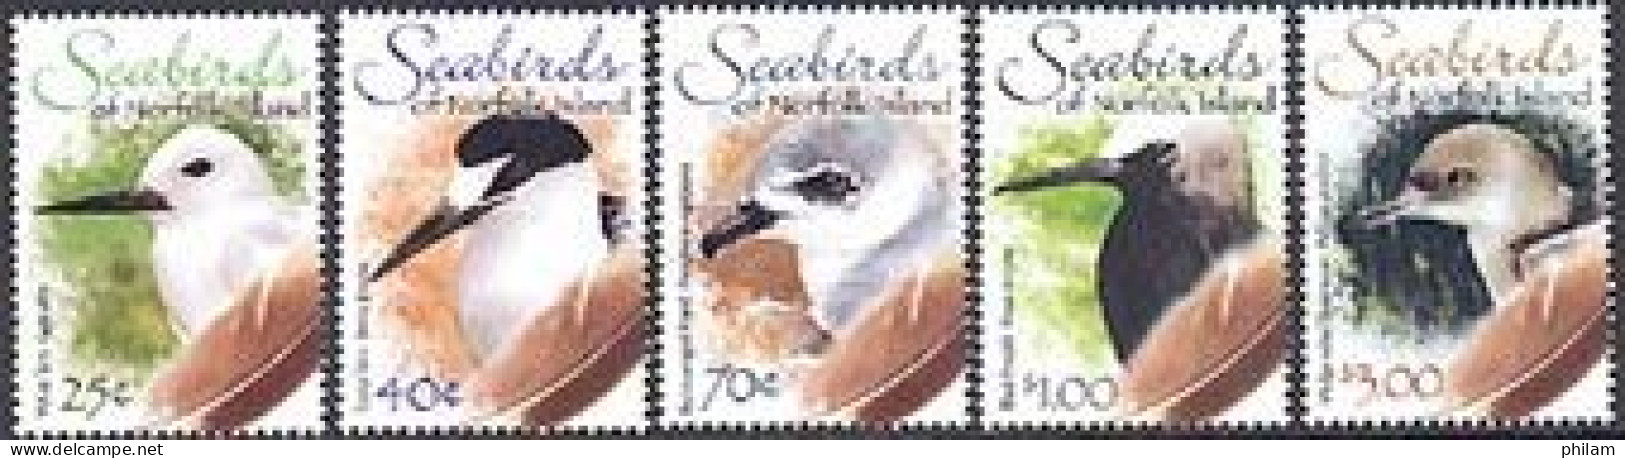 NORFOLK 2006 - Oiseaux De Mer - II - (White Tern) - 5 V. - Mouettes